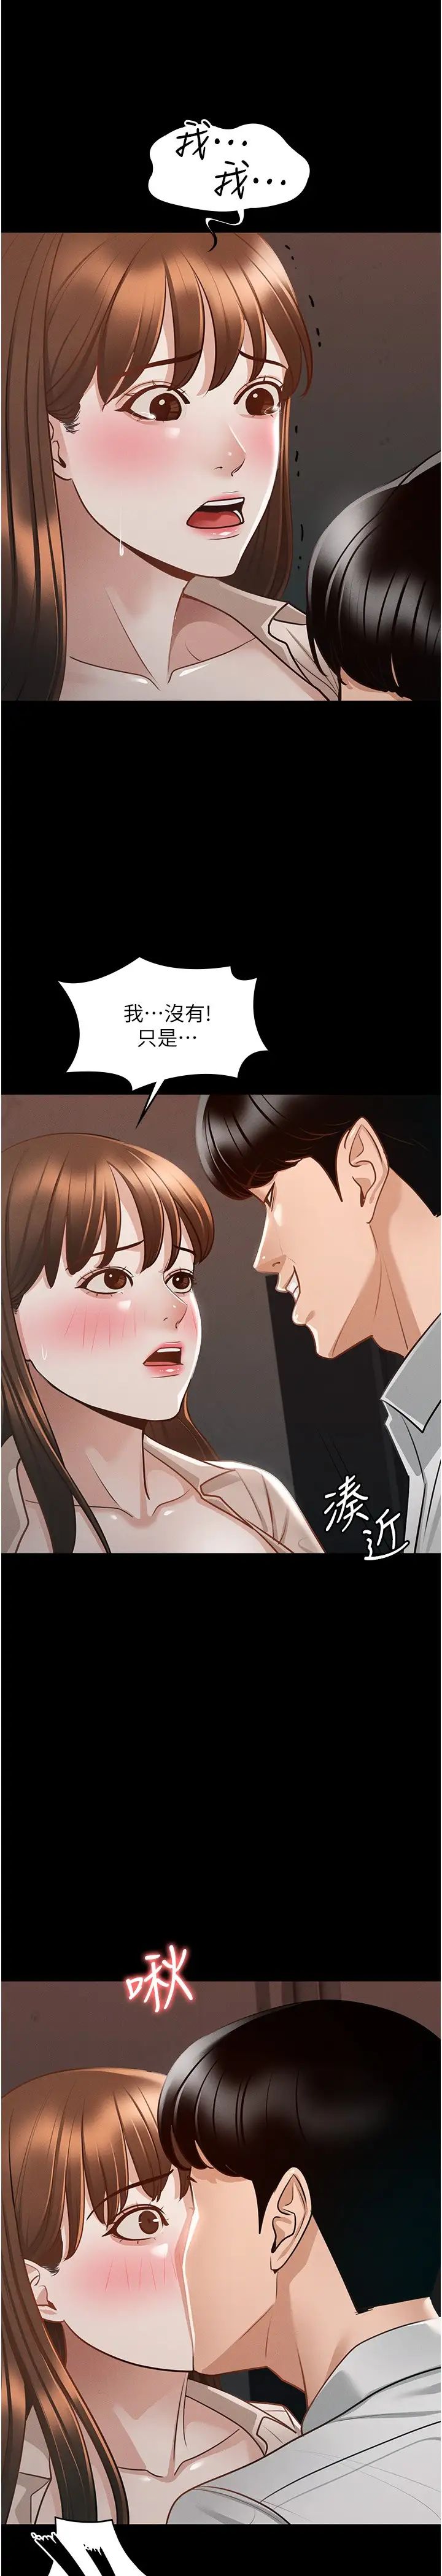 韩国污漫画 超級公務員 第14话 你不也意犹未尽吗？ 17